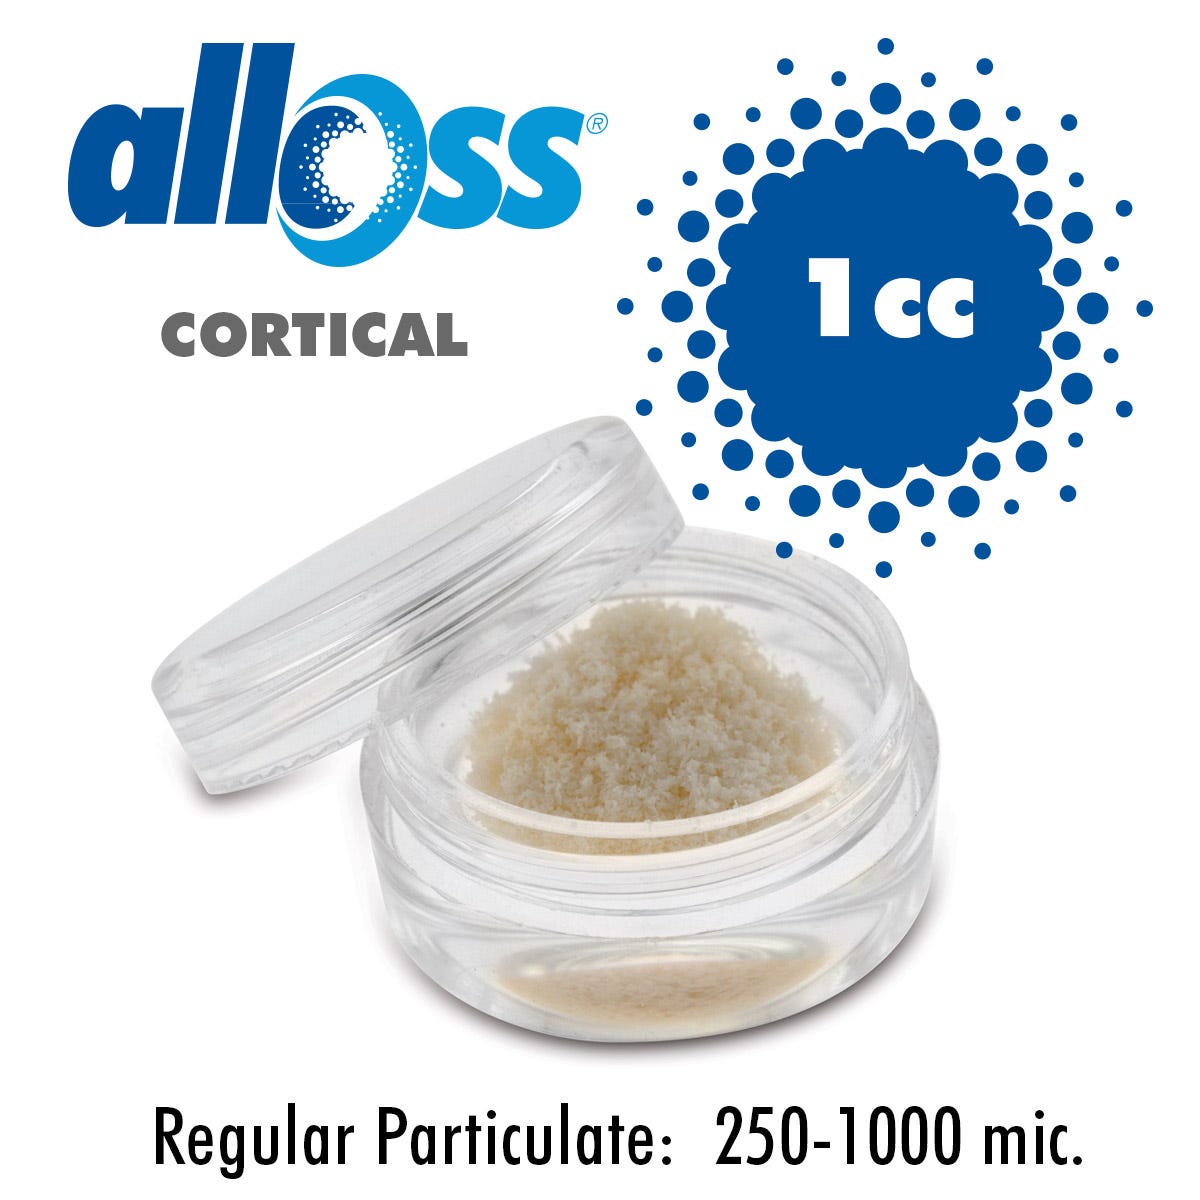 alloOss® Cortical Particulate  250-1000um (1.0cc)